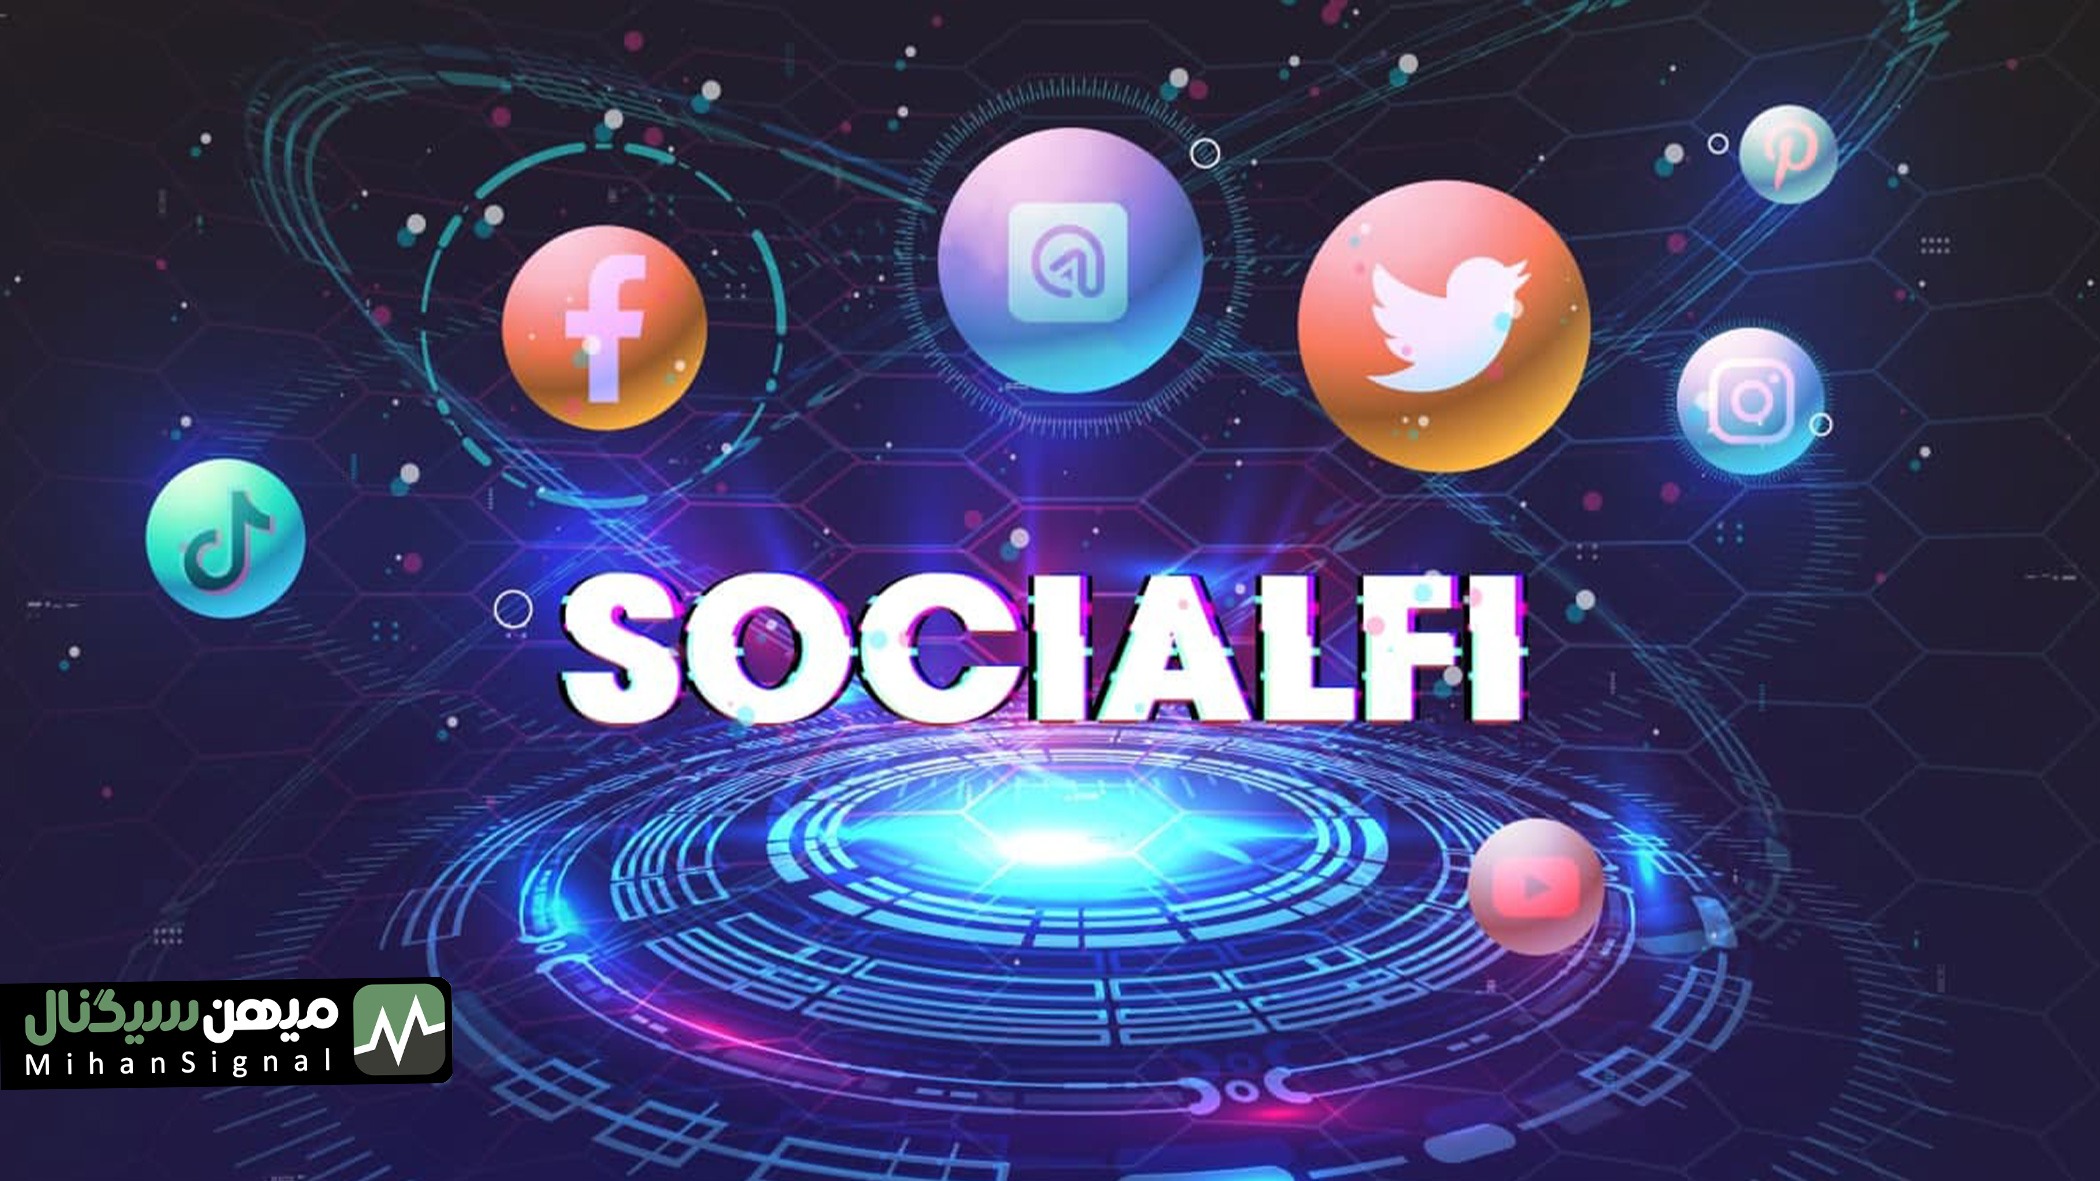 سوشال فای (SocialFi)